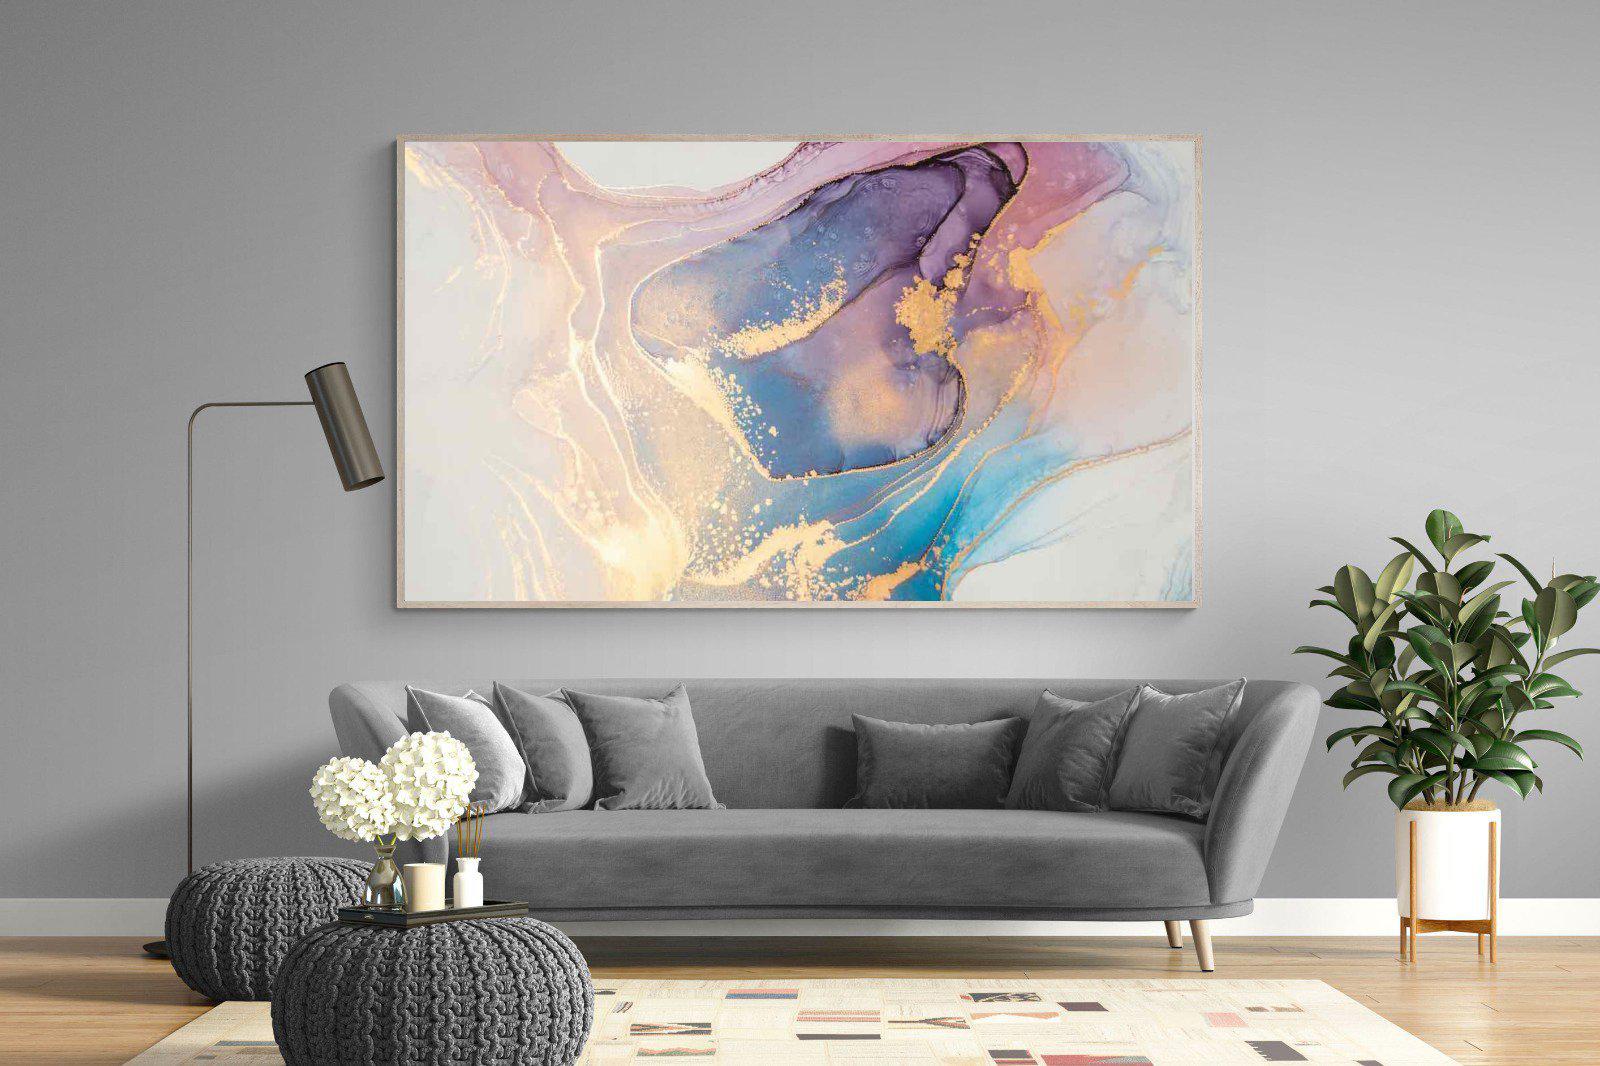 Blushing-Wall_Art-220 x 130cm-Mounted Canvas-Wood-Pixalot